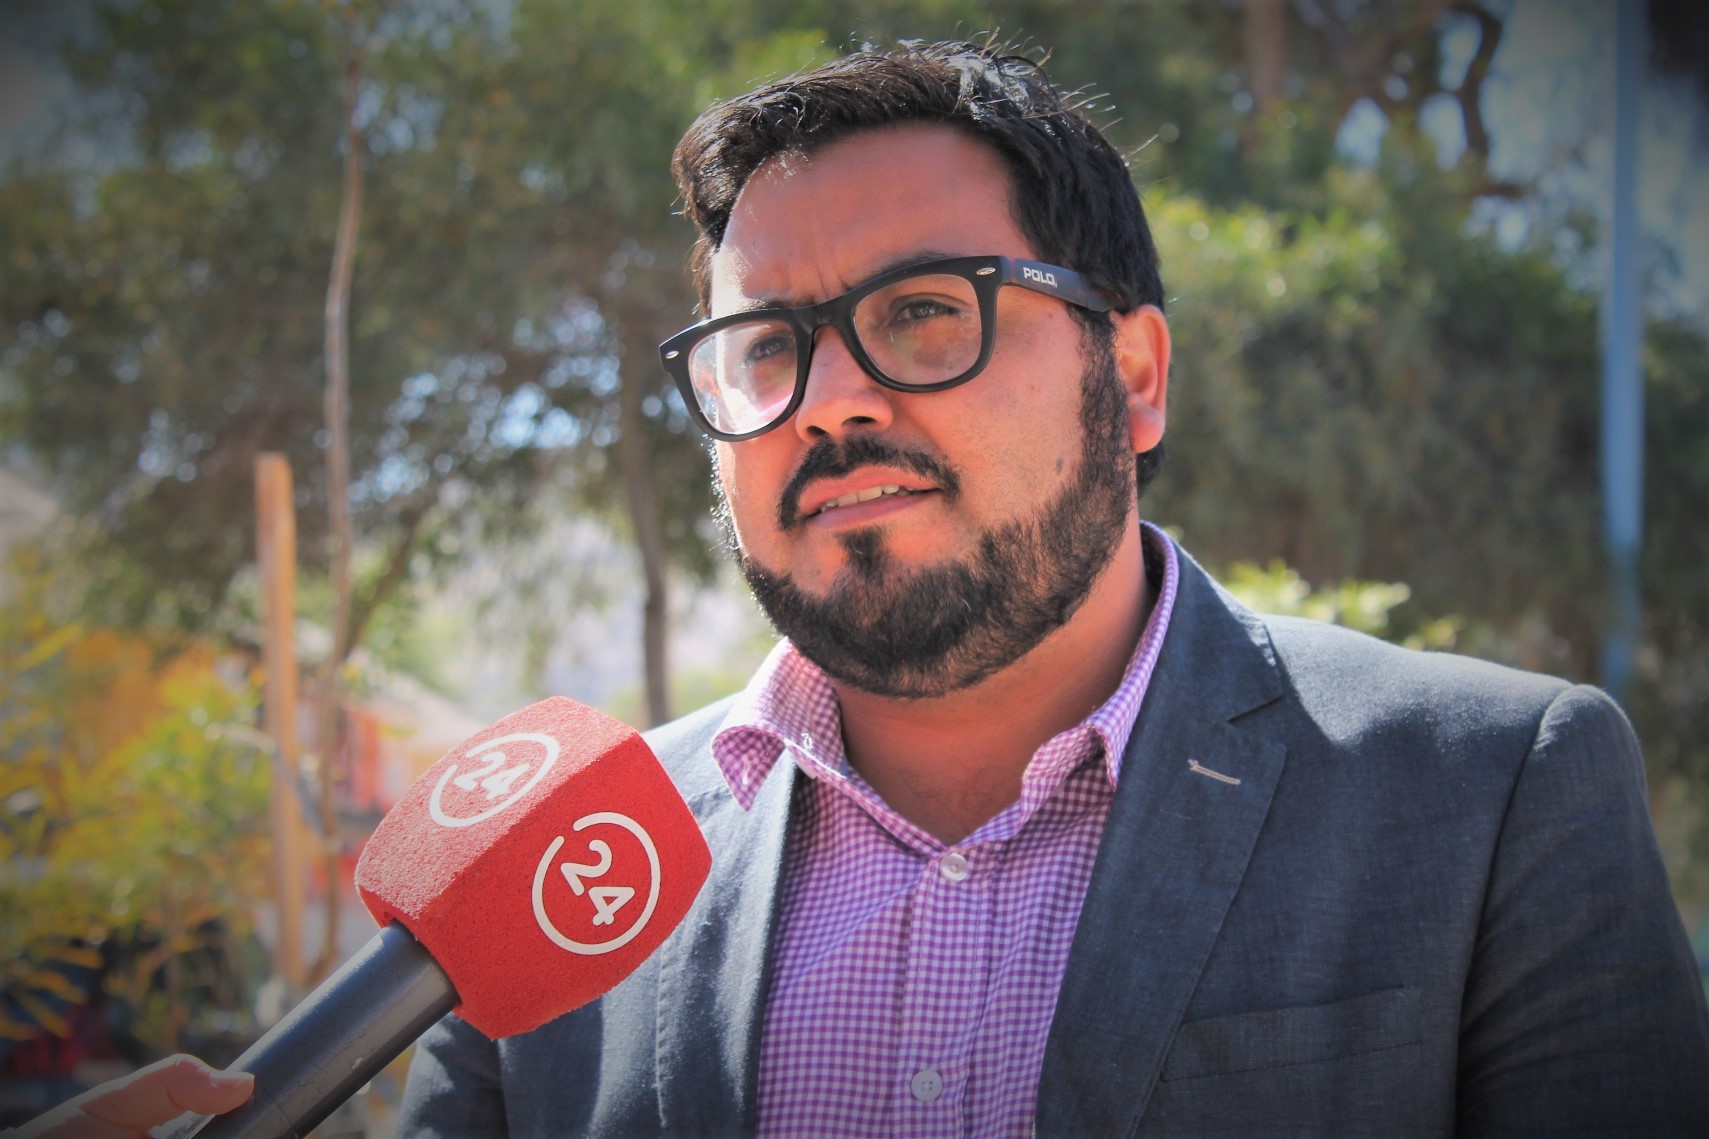 Seremi de Gobierno destaca desarrollo de Elecciones 2017 en Atacama